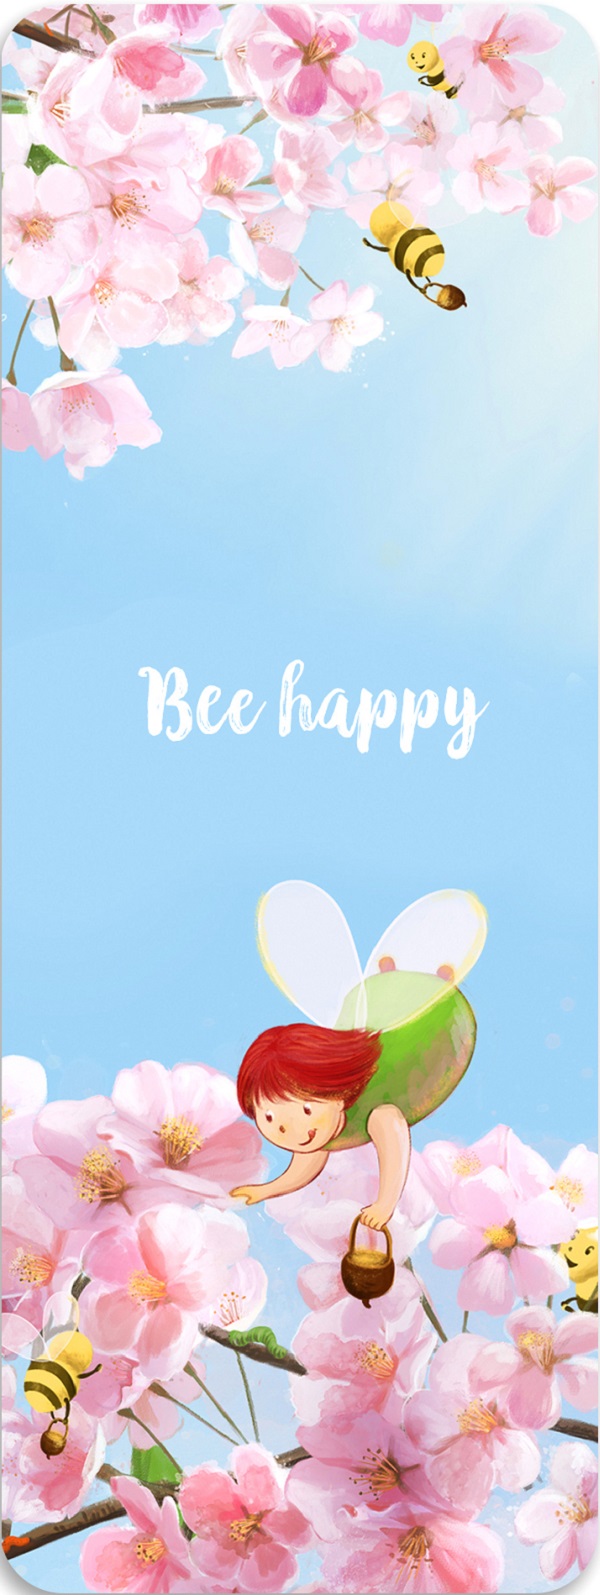 Semn de carte: Bee happy